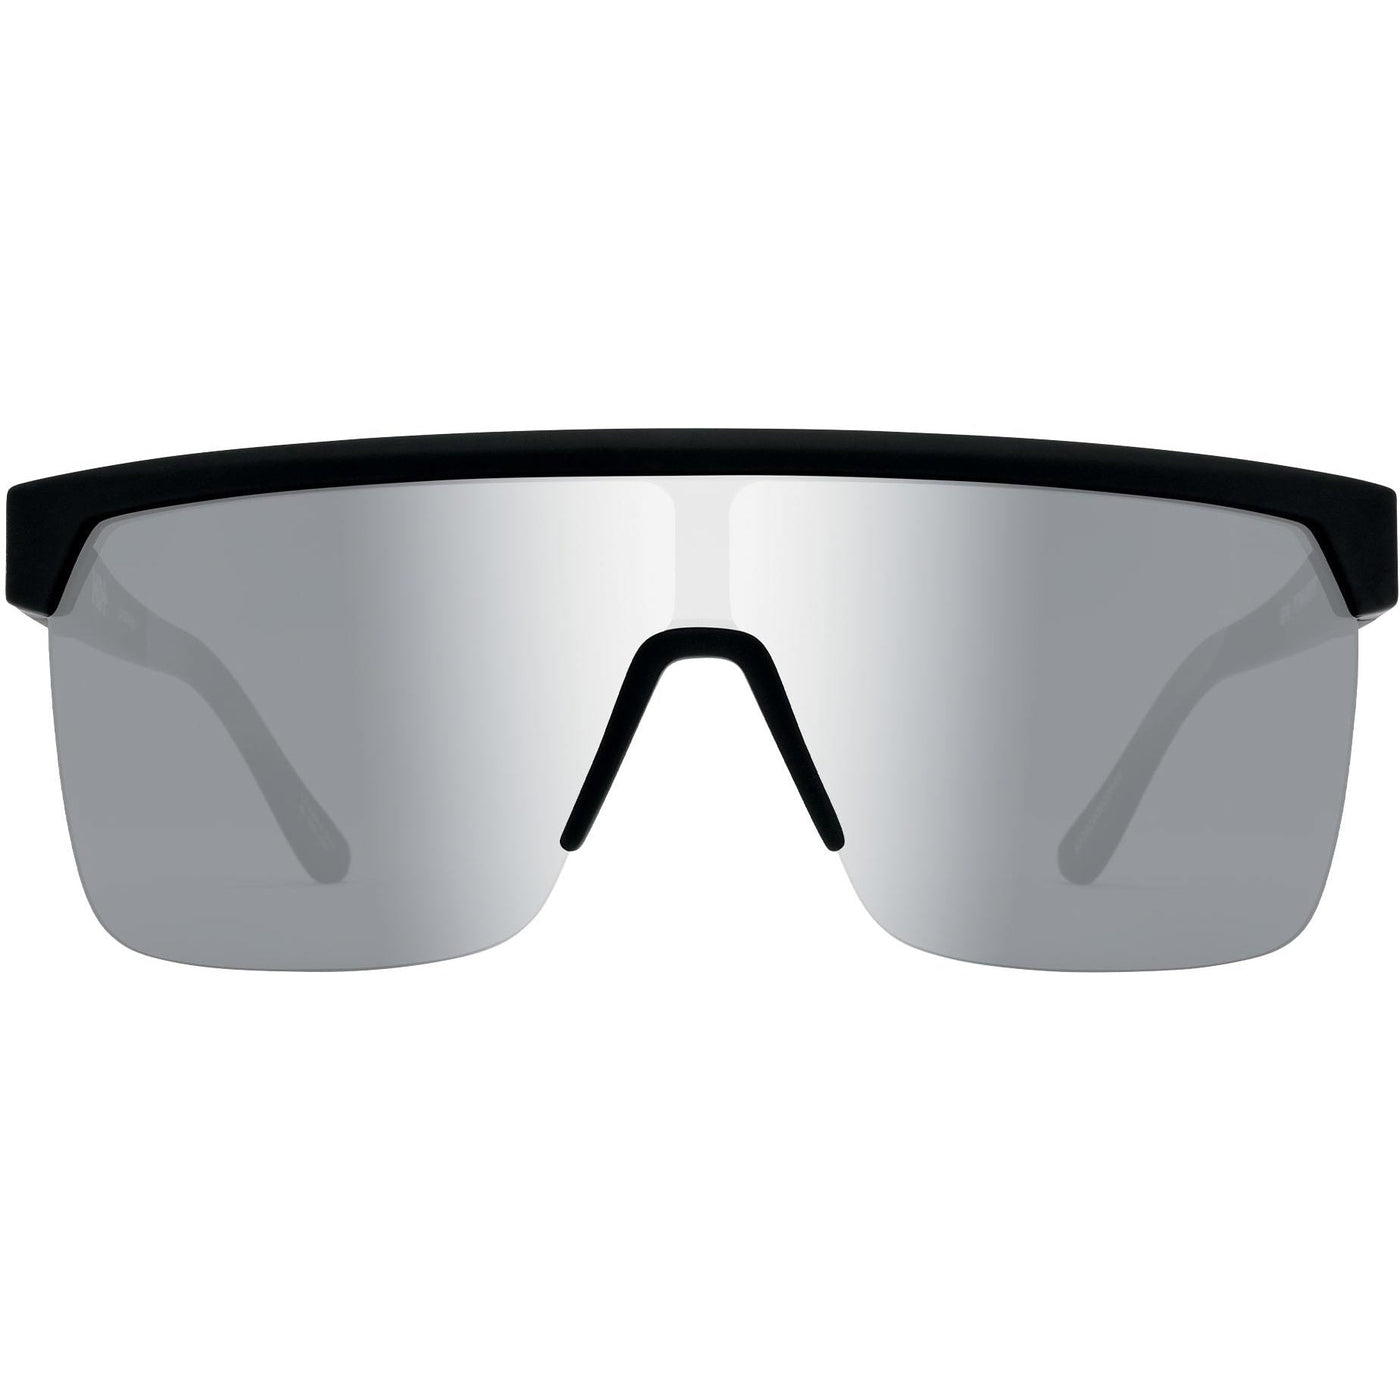 polarized semi-rimless sunglasses - silver